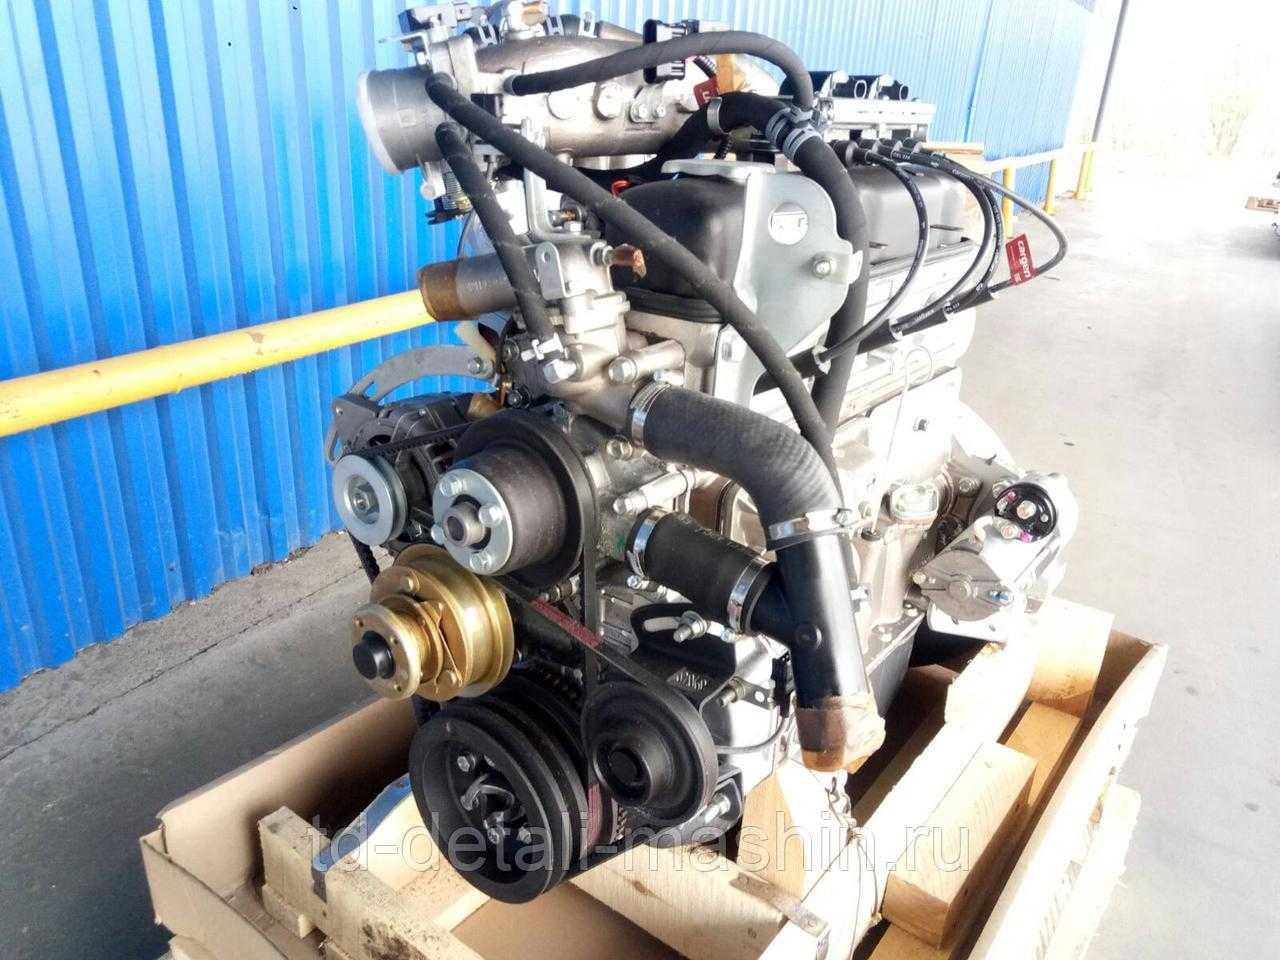 Характерные особенности двигателя УМЗ 4216 Двигатели повышенной мощности Ульяновский моторный завод стал производить с 1997 года, первым ДВС с диаметром